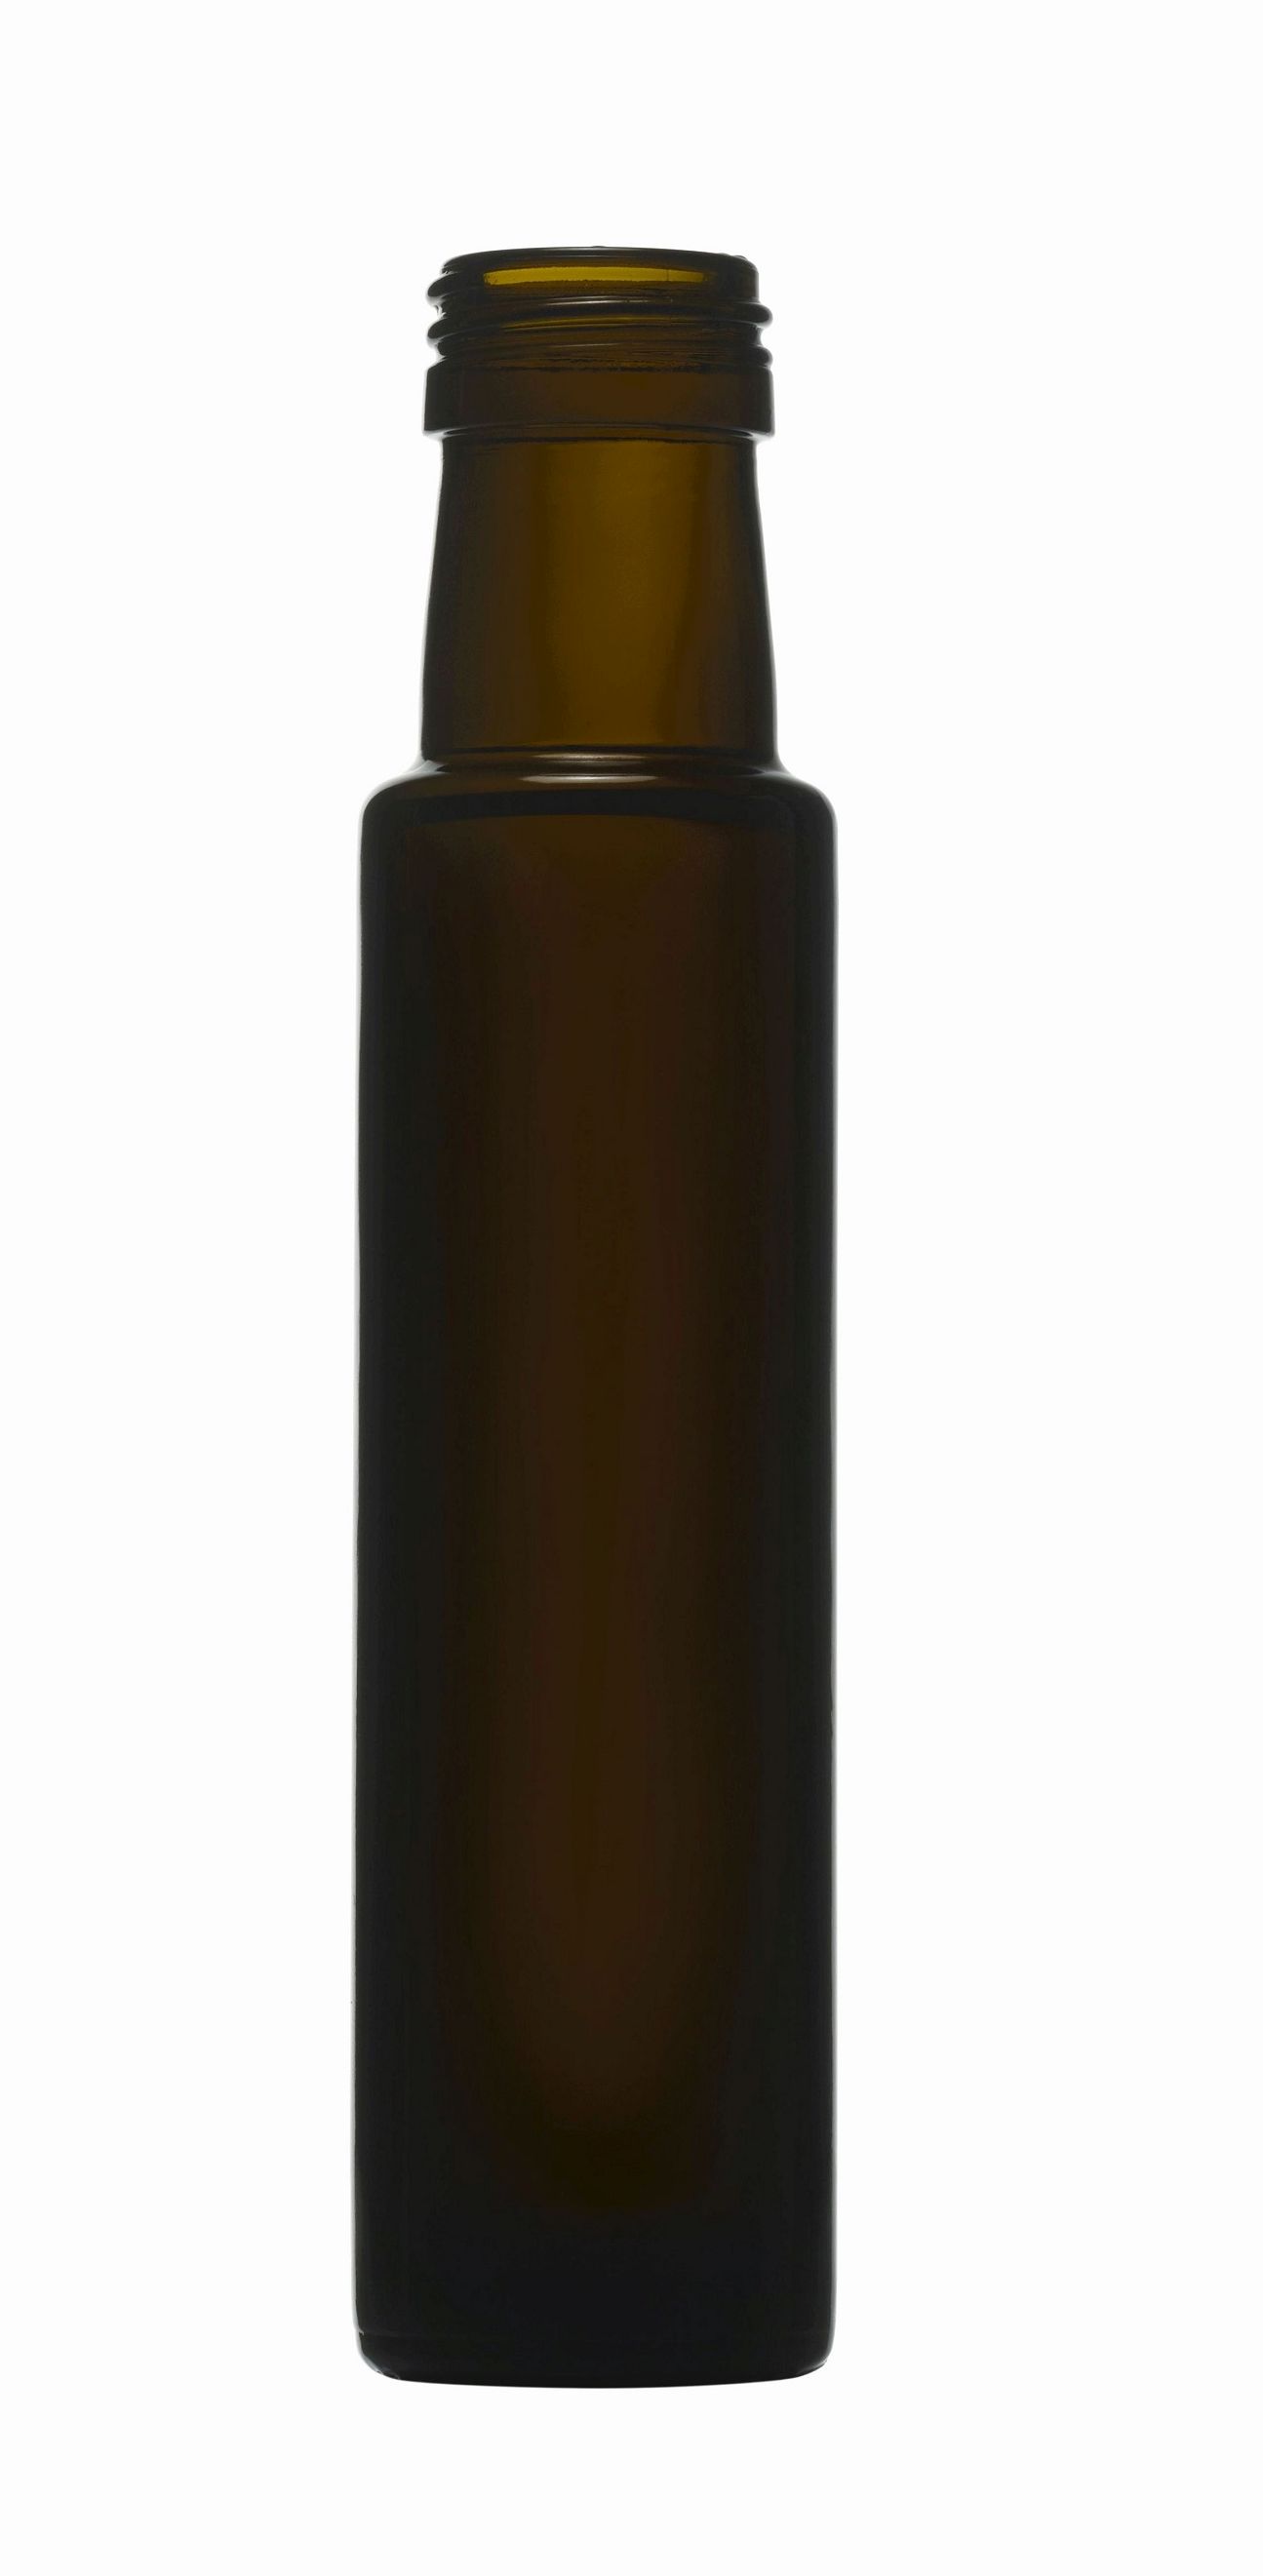 6x Glasflasche 100 ml, extrahoch aus Antikglas mit Schraubverschluss. Zum Abfüllen von Öl oder Essig